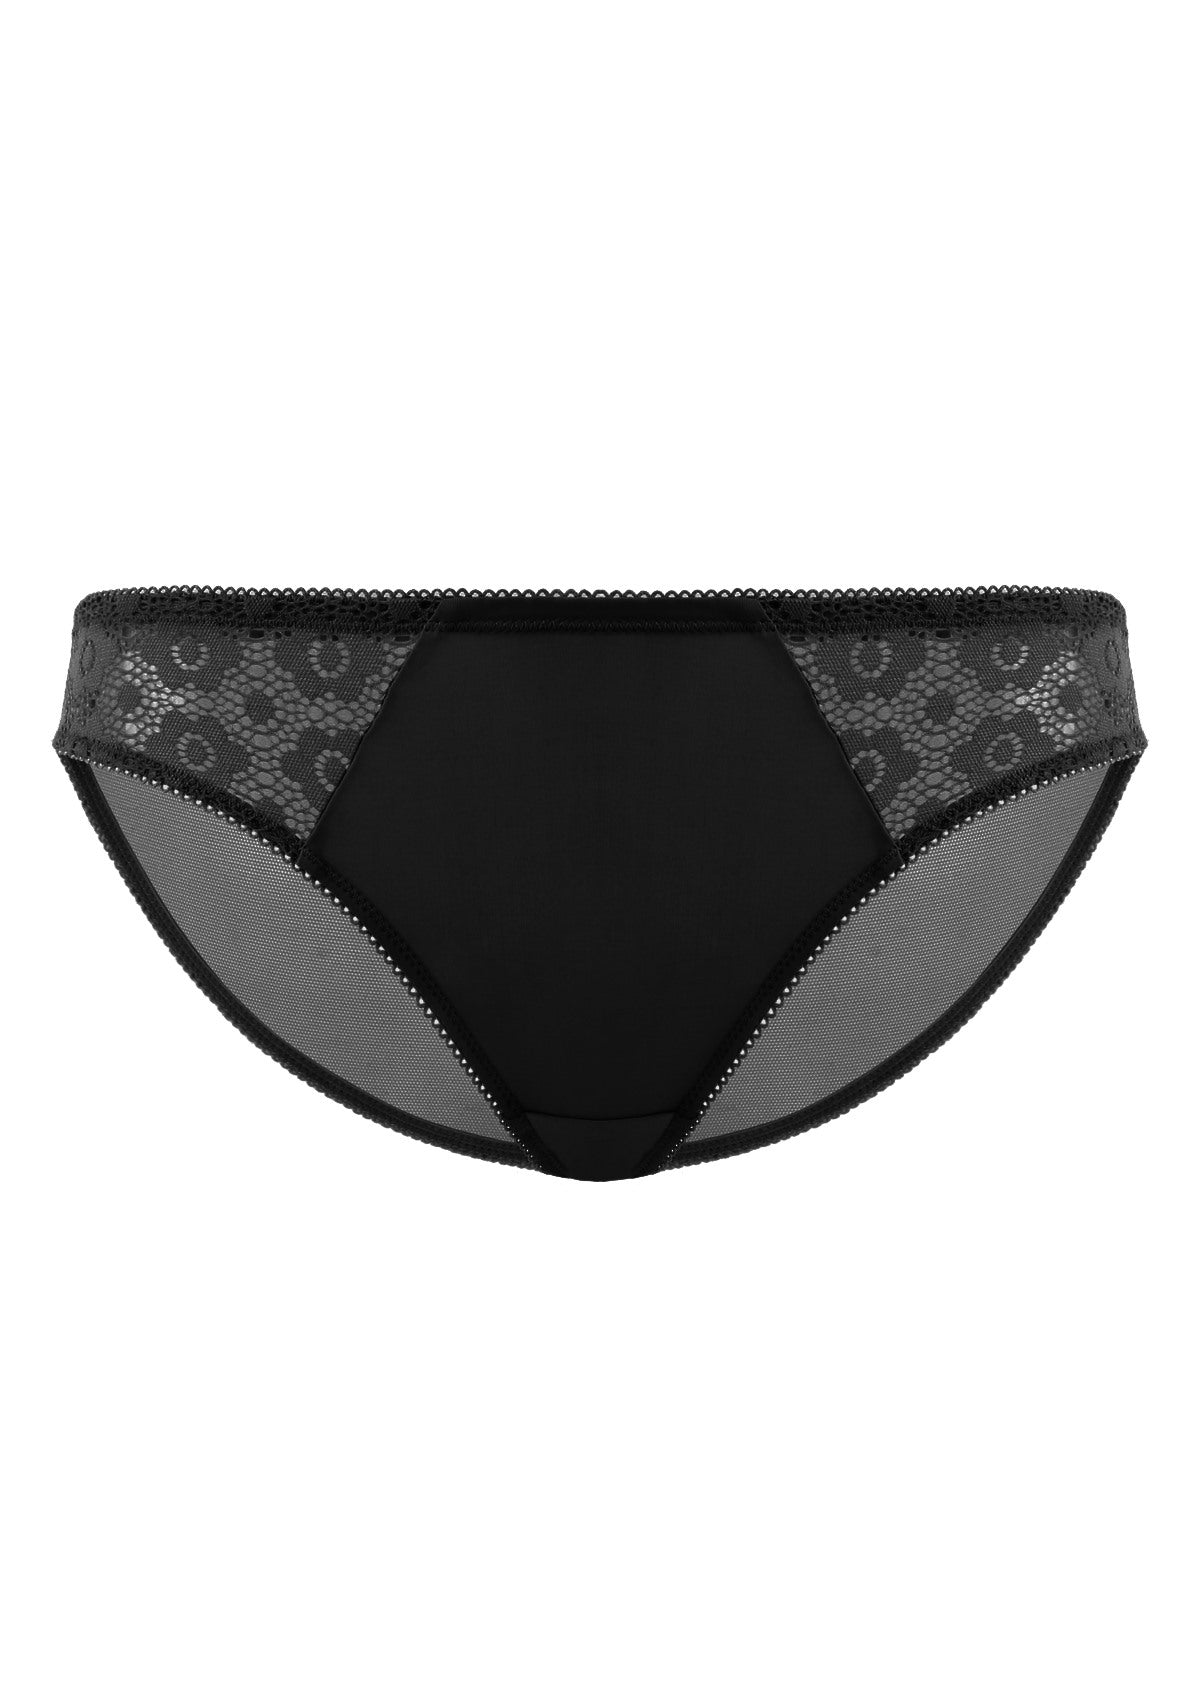 HSIA Serena Comfortable Trendy Lace Trim Bikini Underwear - XL / Champagne